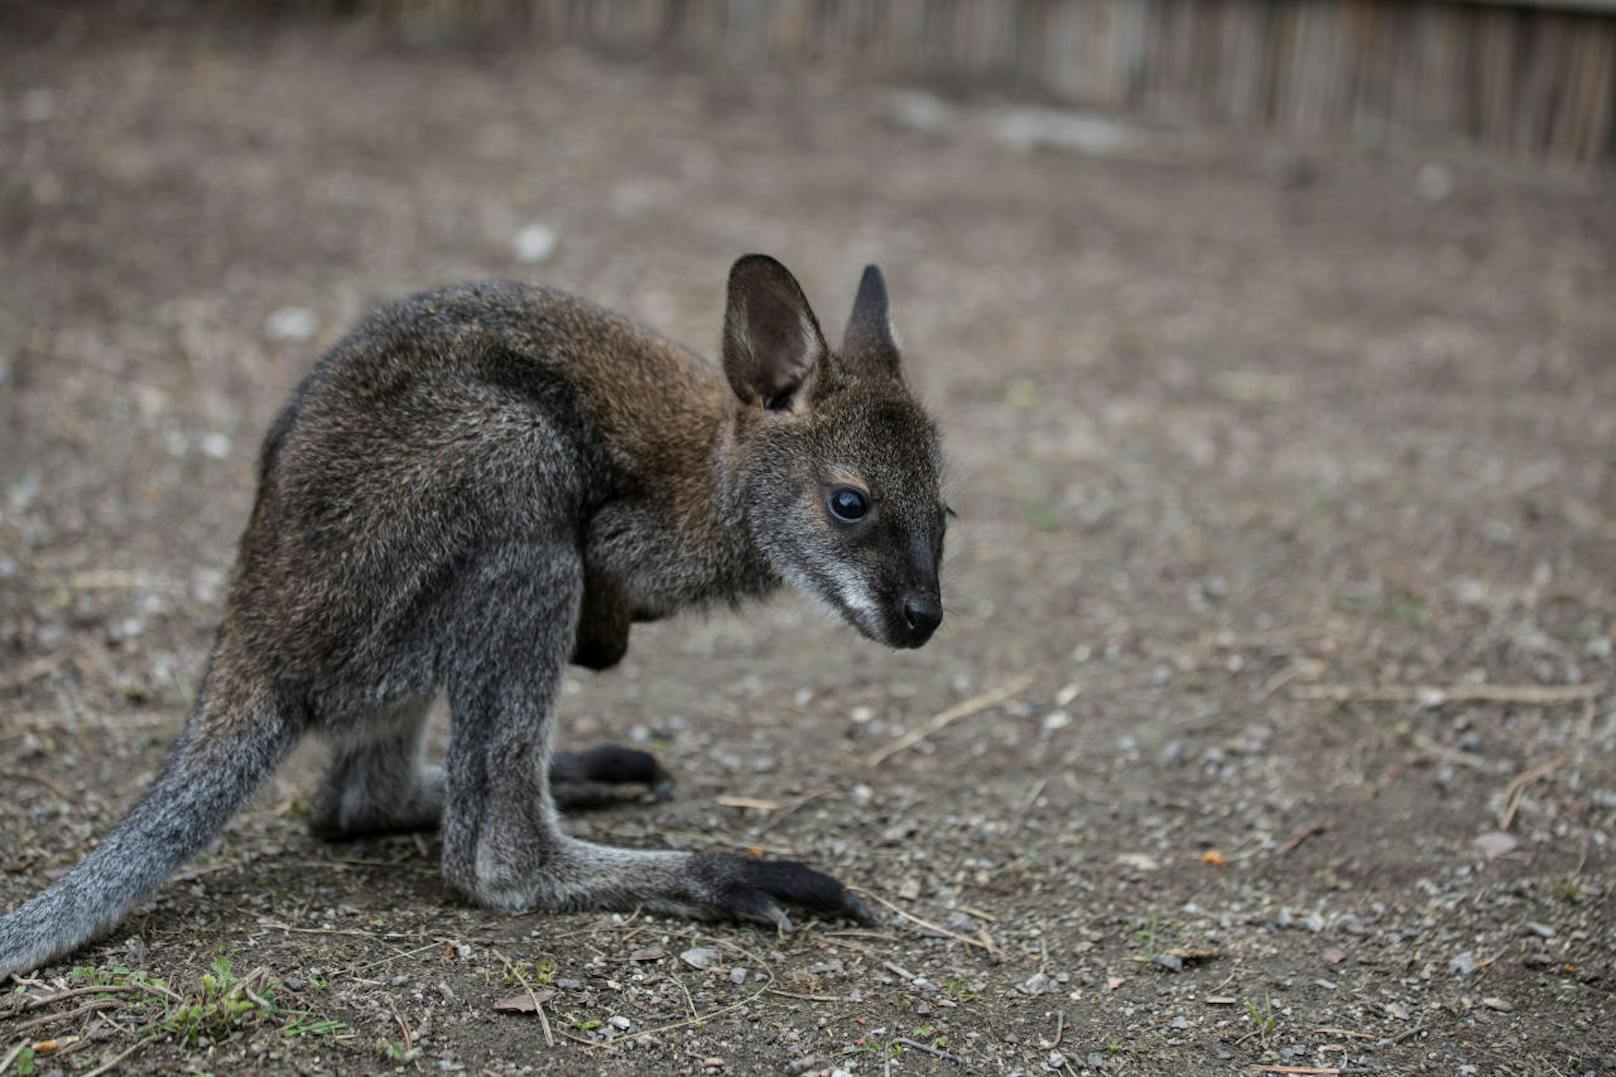 Das kleine Känguru schaute im Februar das erste Mal aus dem Beutel - jetzt hüpft es bereits alleine durch's Gehege.